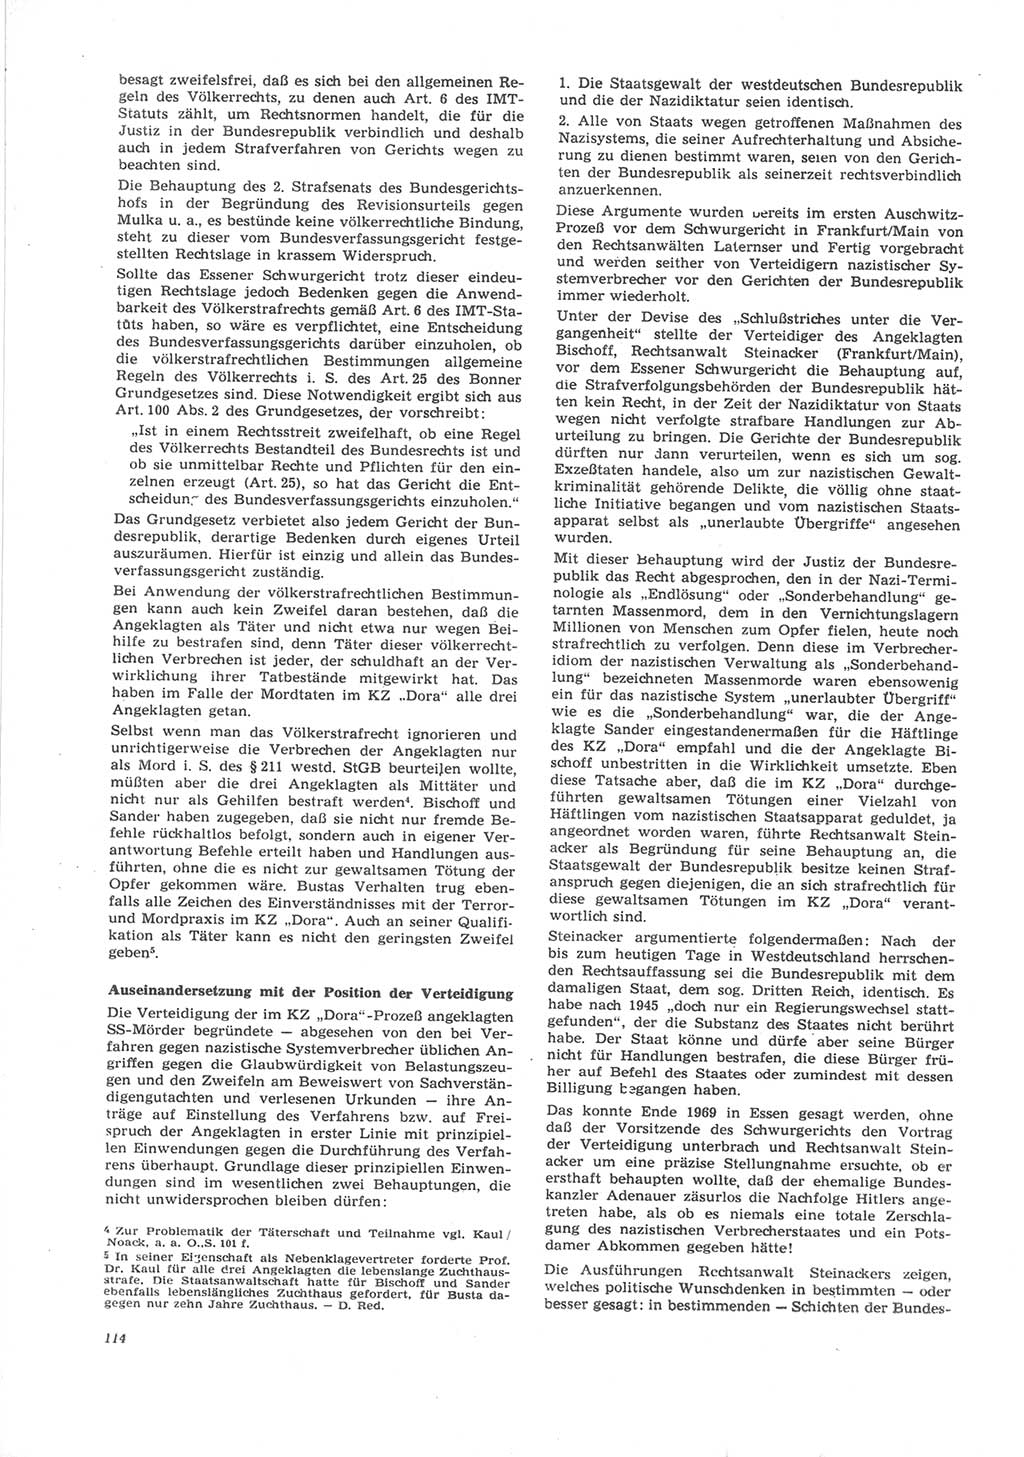 Neue Justiz (NJ), Zeitschrift für Recht und Rechtswissenschaft [Deutsche Demokratische Republik (DDR)], 24. Jahrgang 1970, Seite 114 (NJ DDR 1970, S. 114)